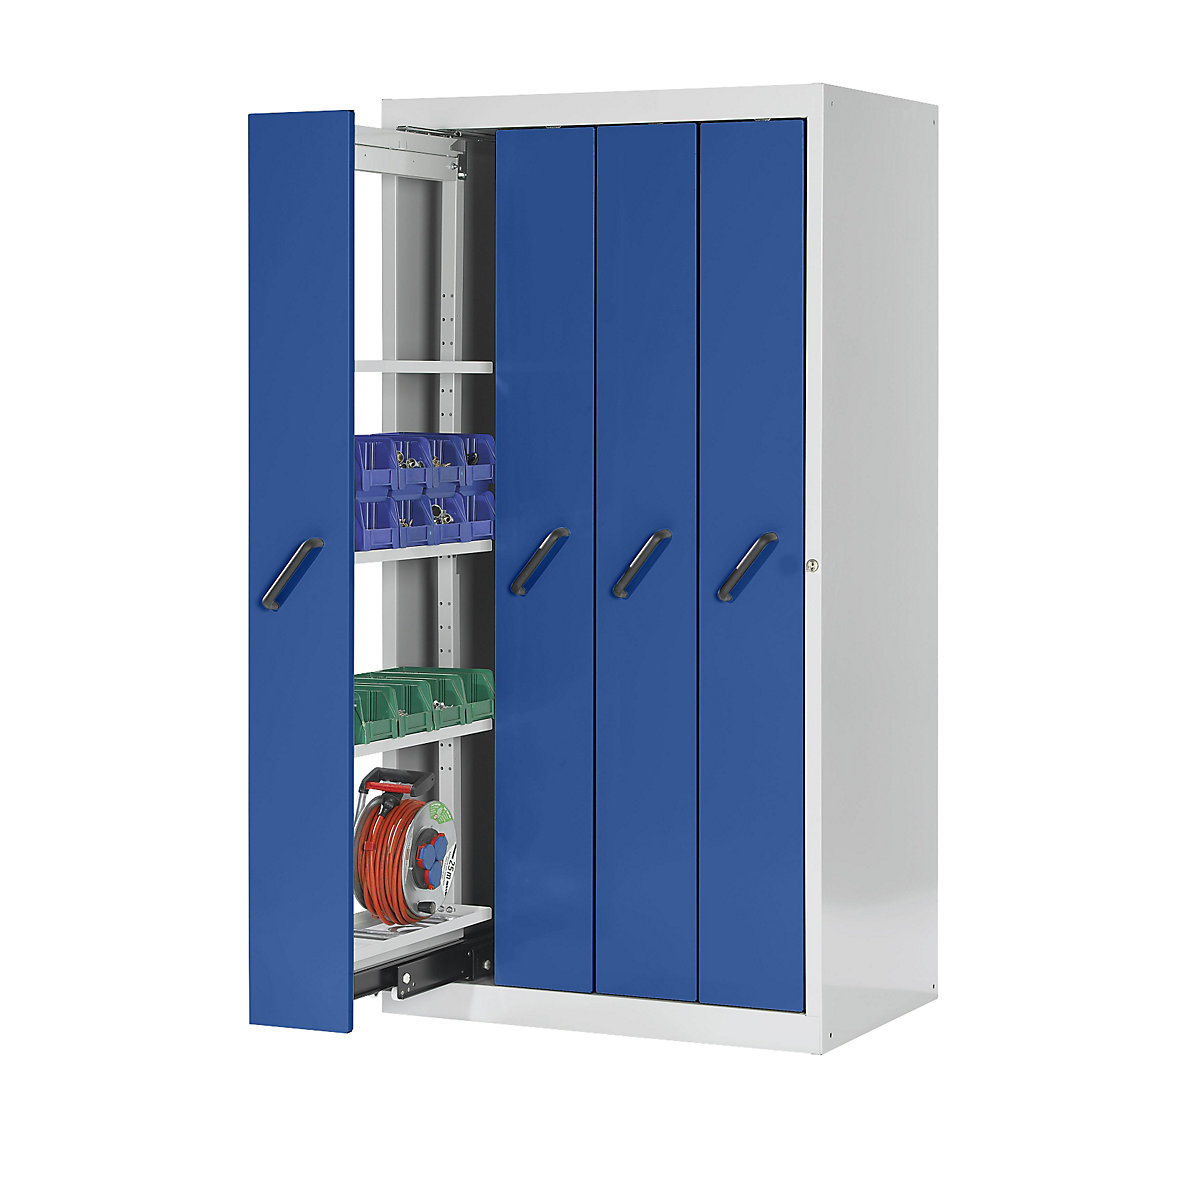 LISTA Vertikalauszugschrank mit Frontblenden, mit 4 Ablageböden, 4 Auszüge, grau / blau